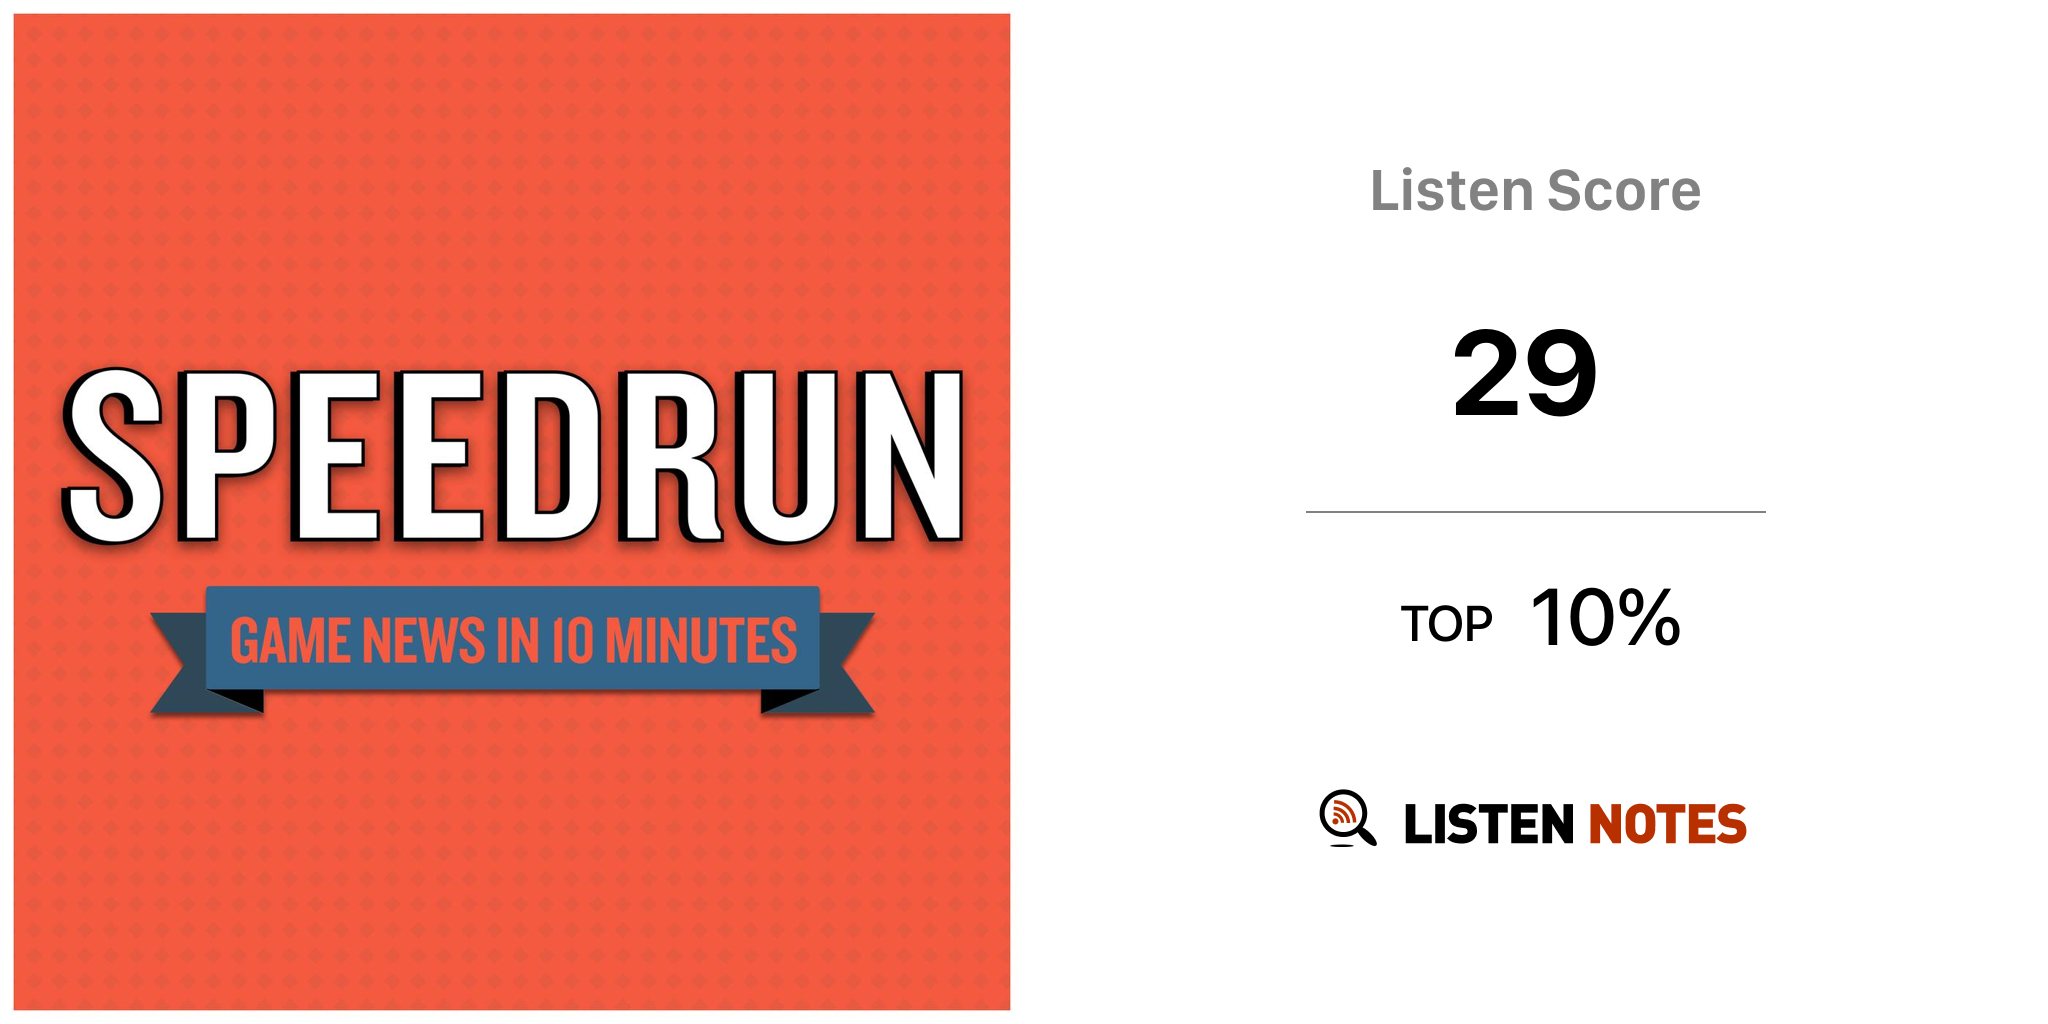 Listen to Speedrun: A Video Game News Show podcast